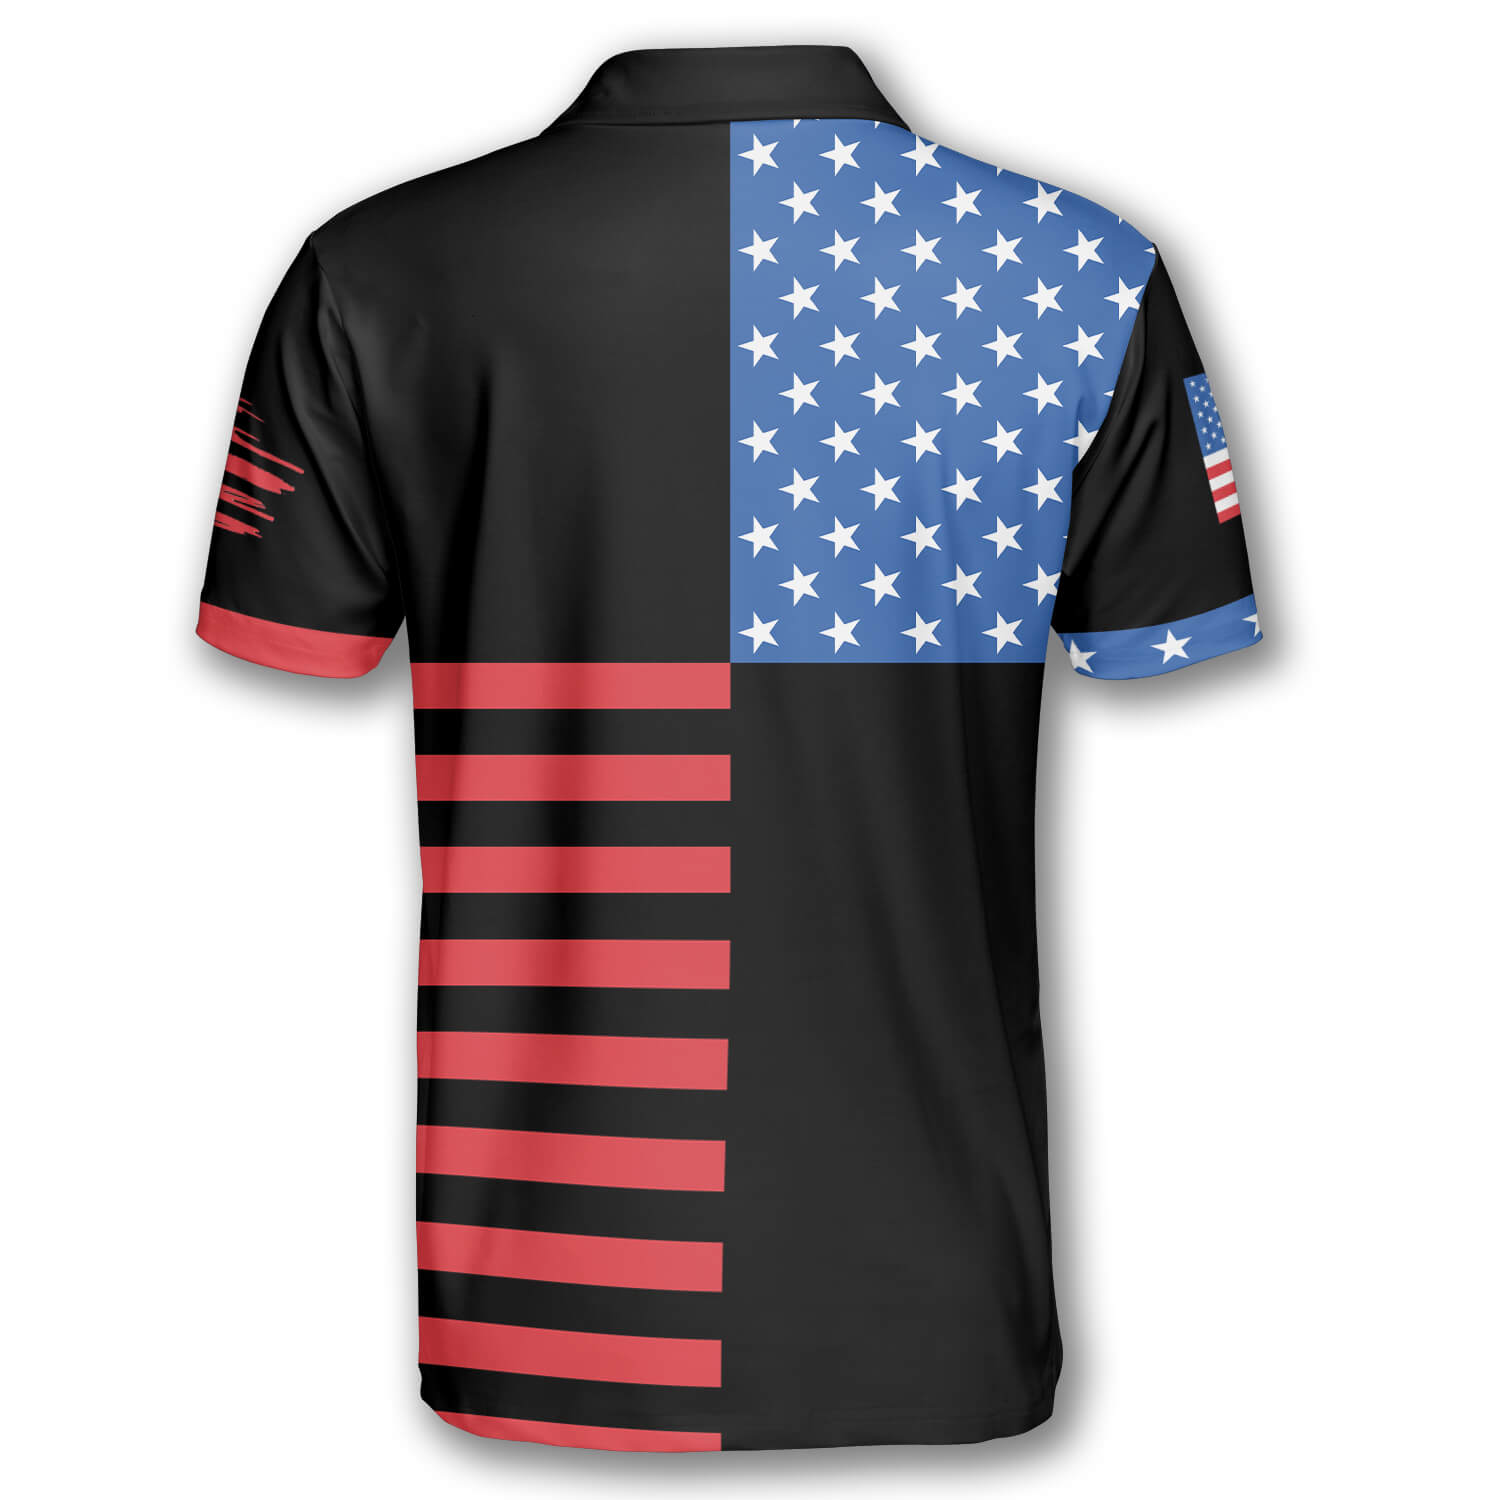 Tennis Rackets Crossed USA Flag Custom Polo Tennis Shirts for Men